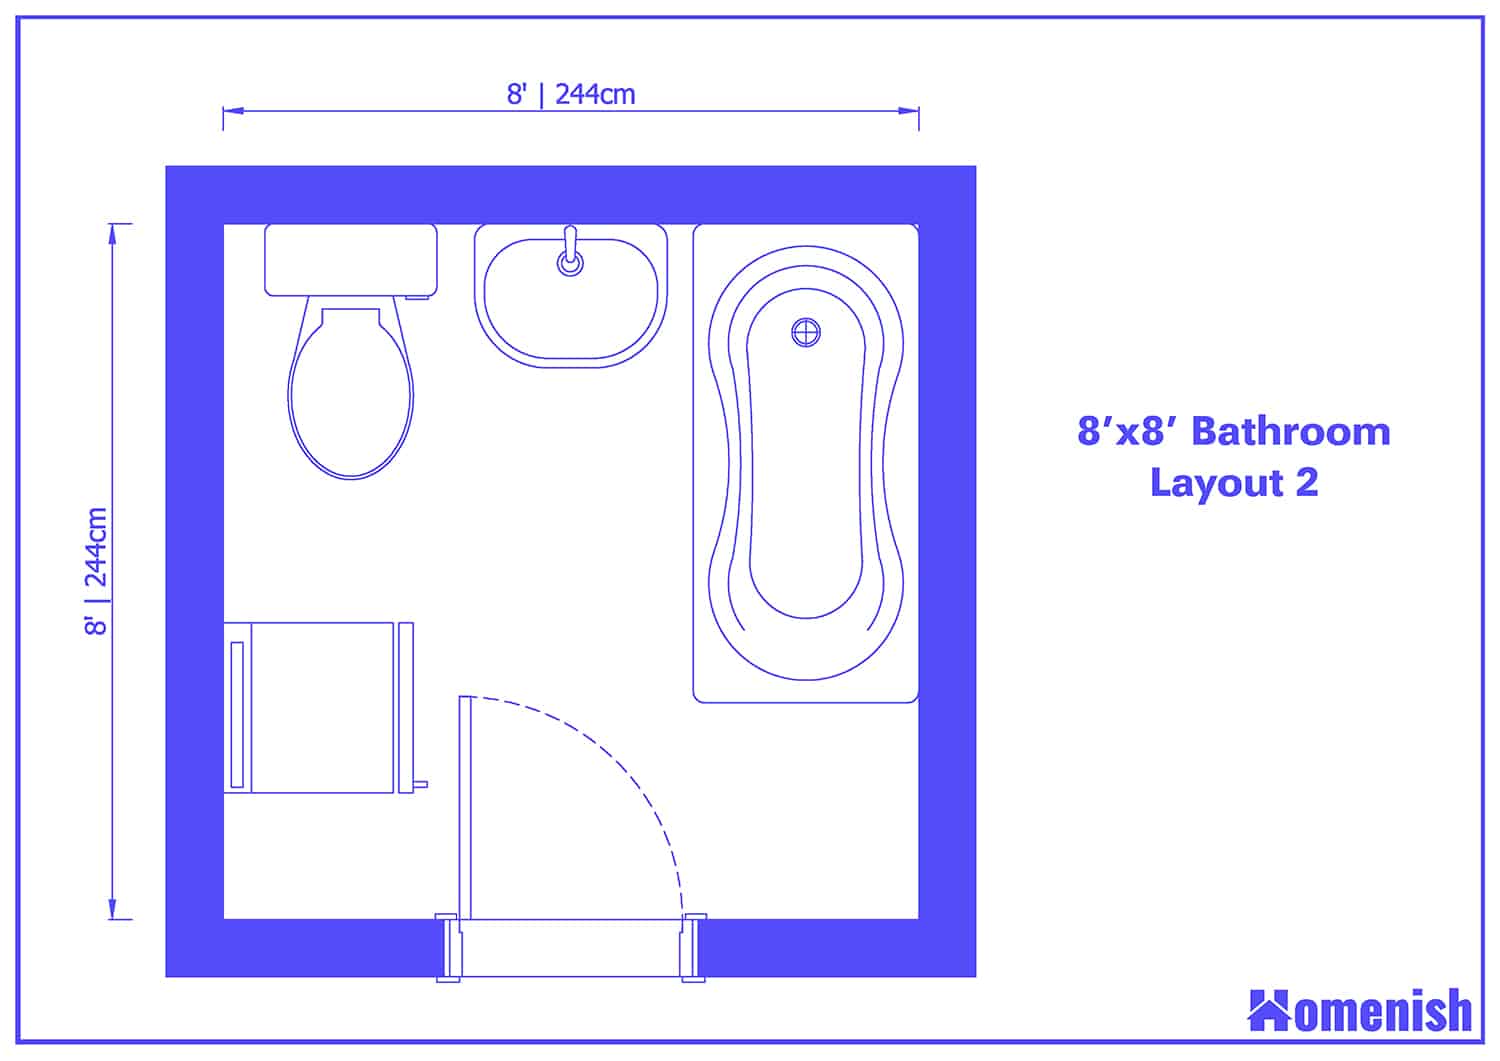 8' x 8' Bathroom Layout 2